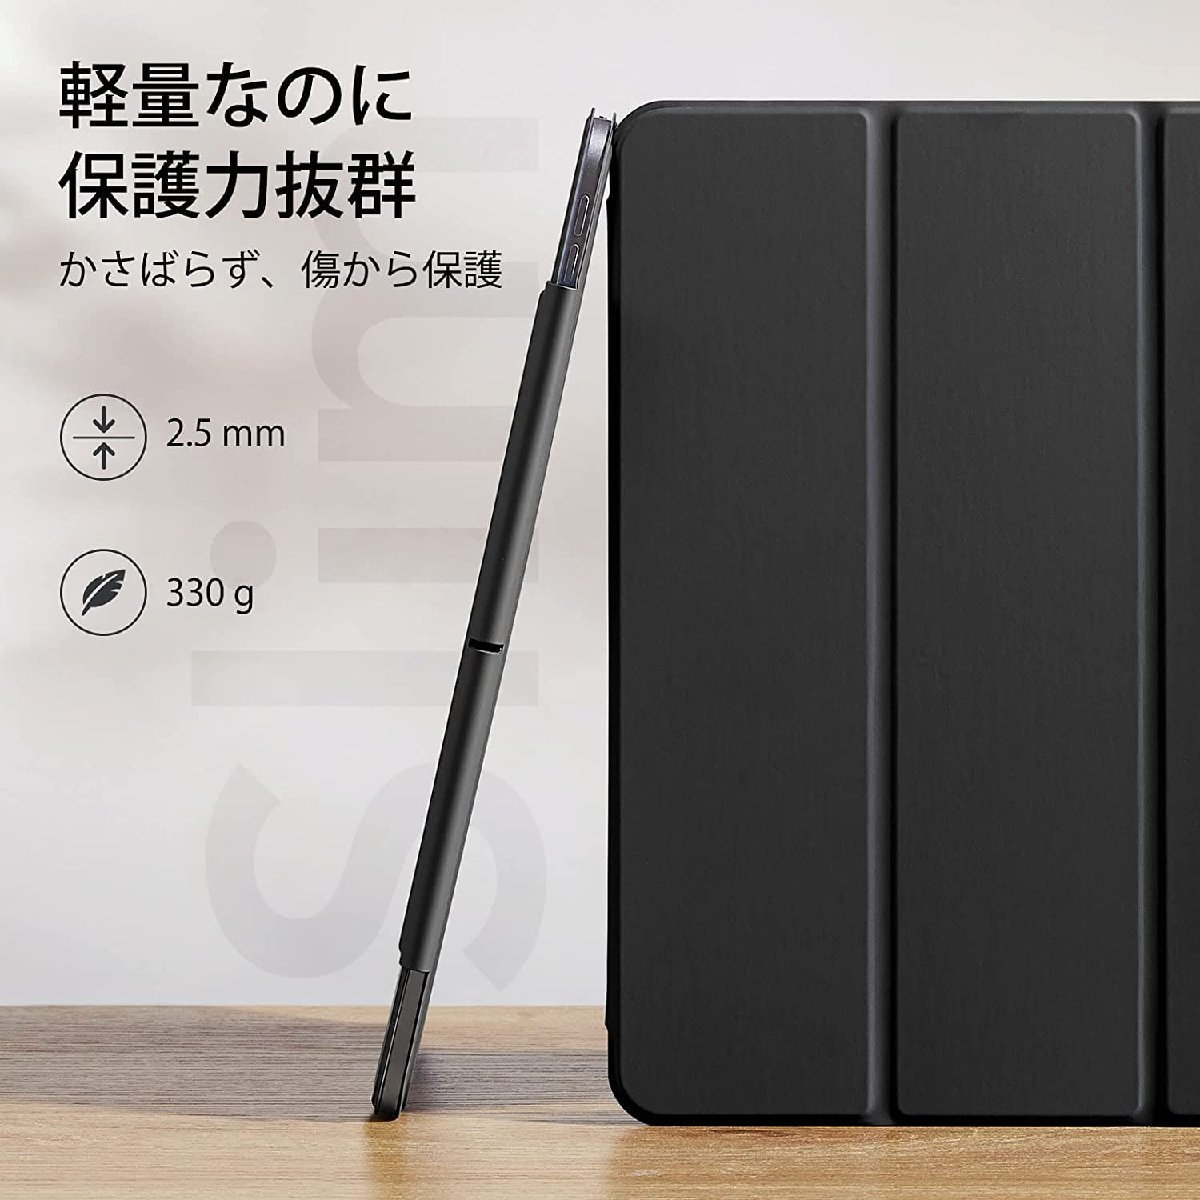 送料無料★iPad Pro 12.9 ケース 第6/5/4世代 マグネットス吸着式 三つ折りスタンド (ブラック)_画像7